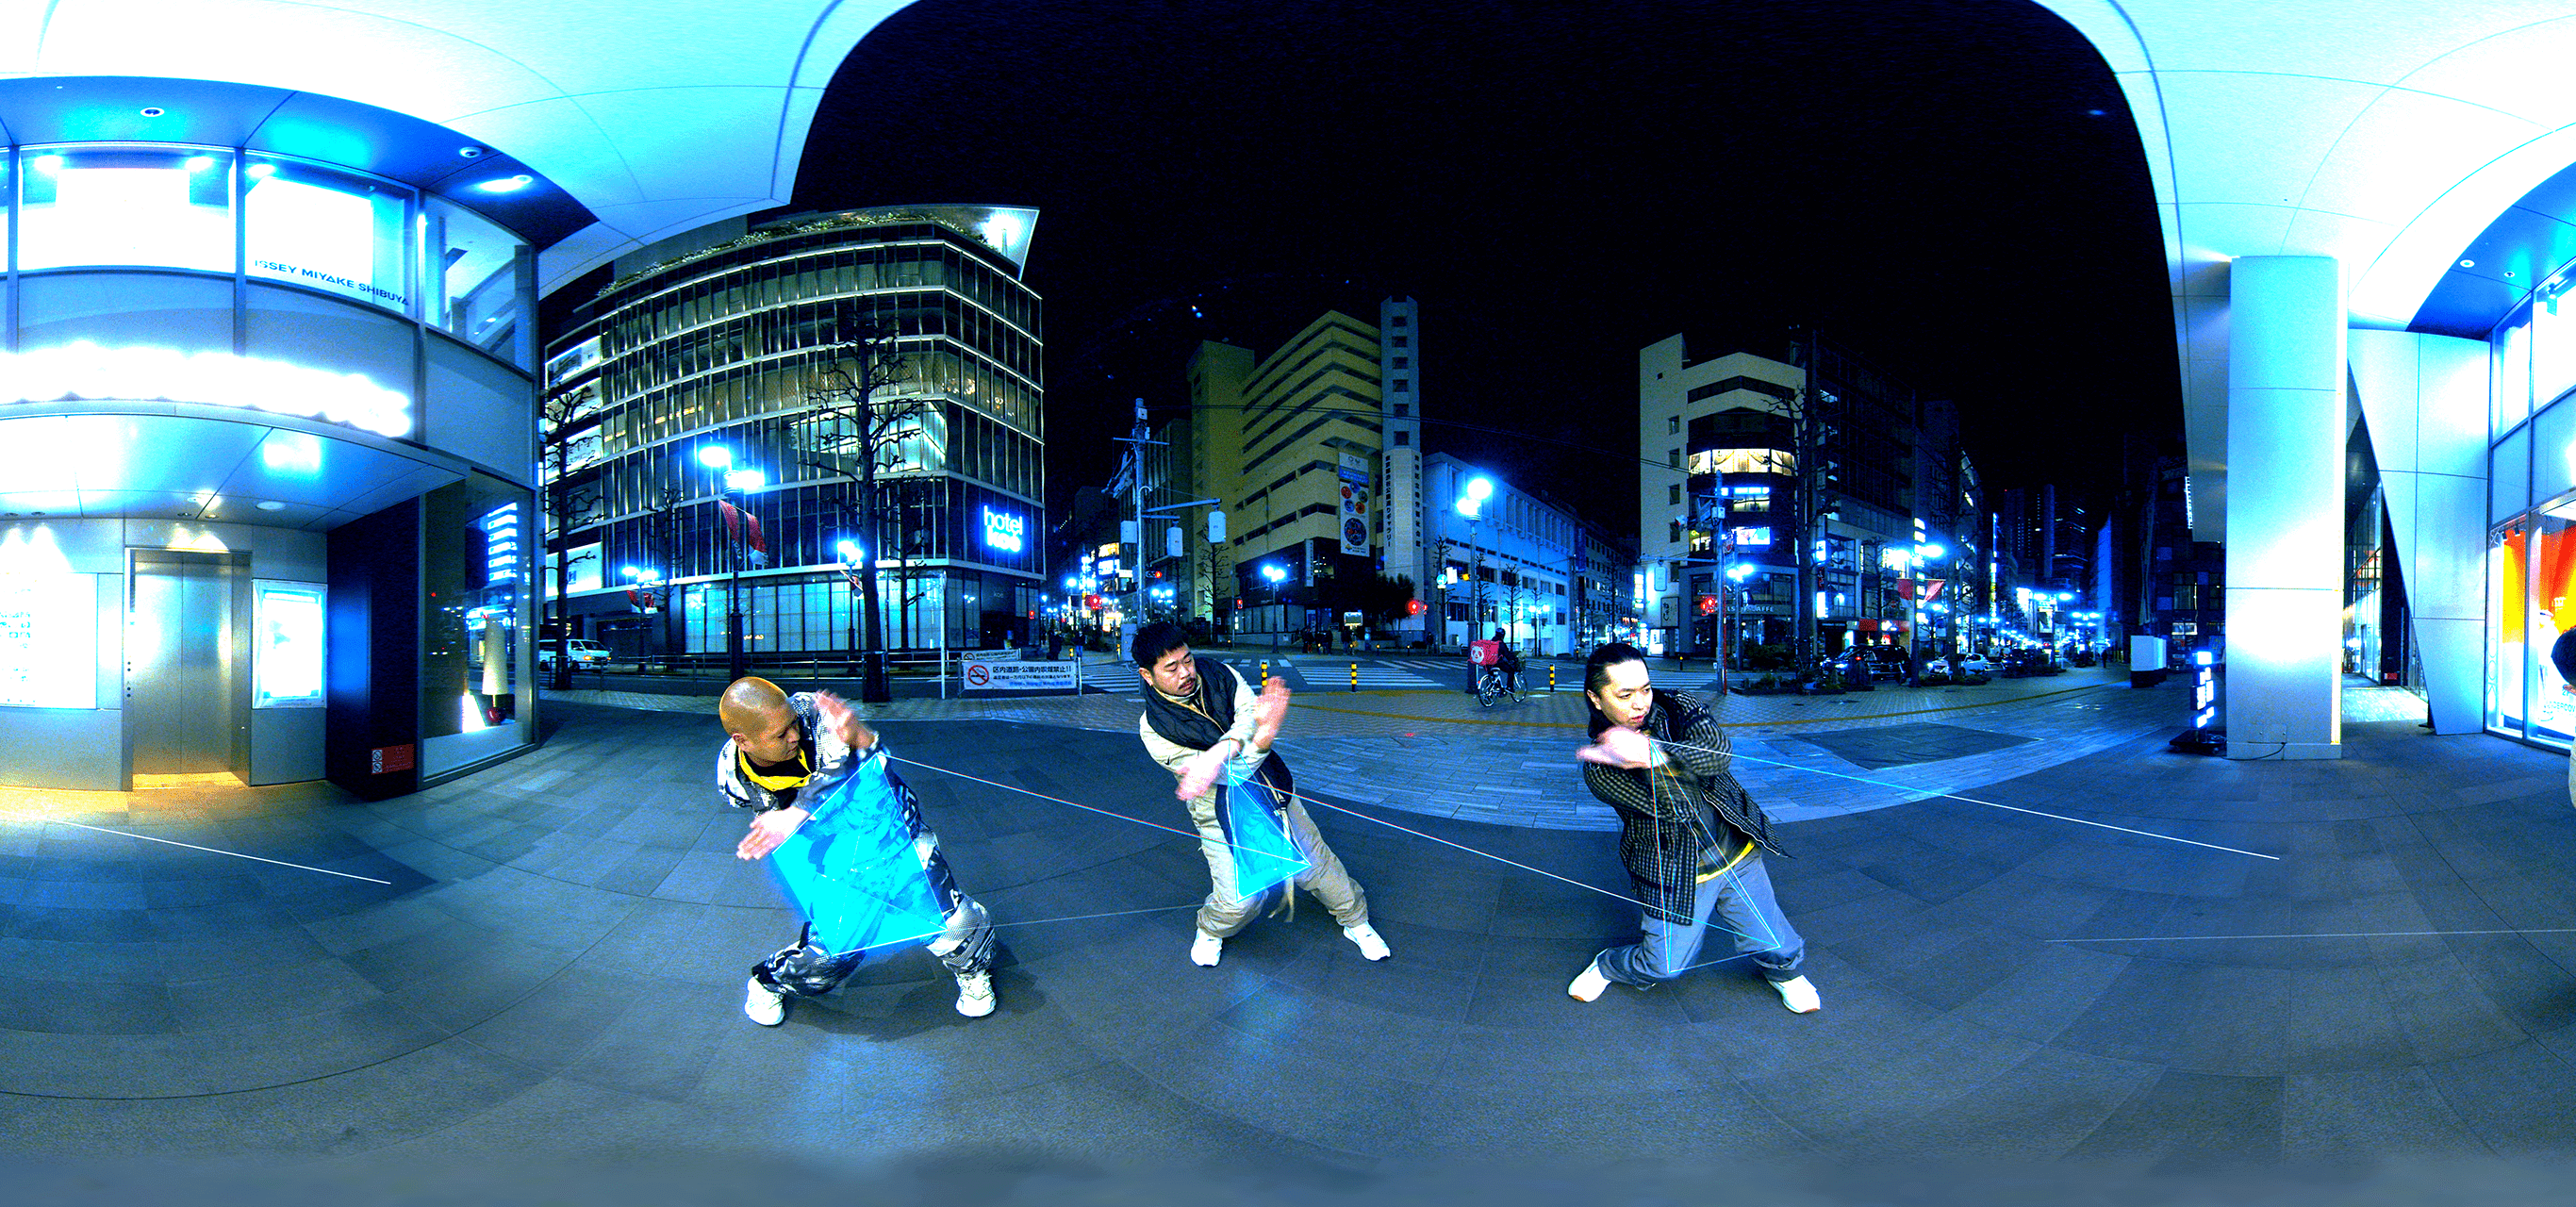 キャプチャ：制作したVR映像。街中の路上でダンサーたちが踊っている様子。